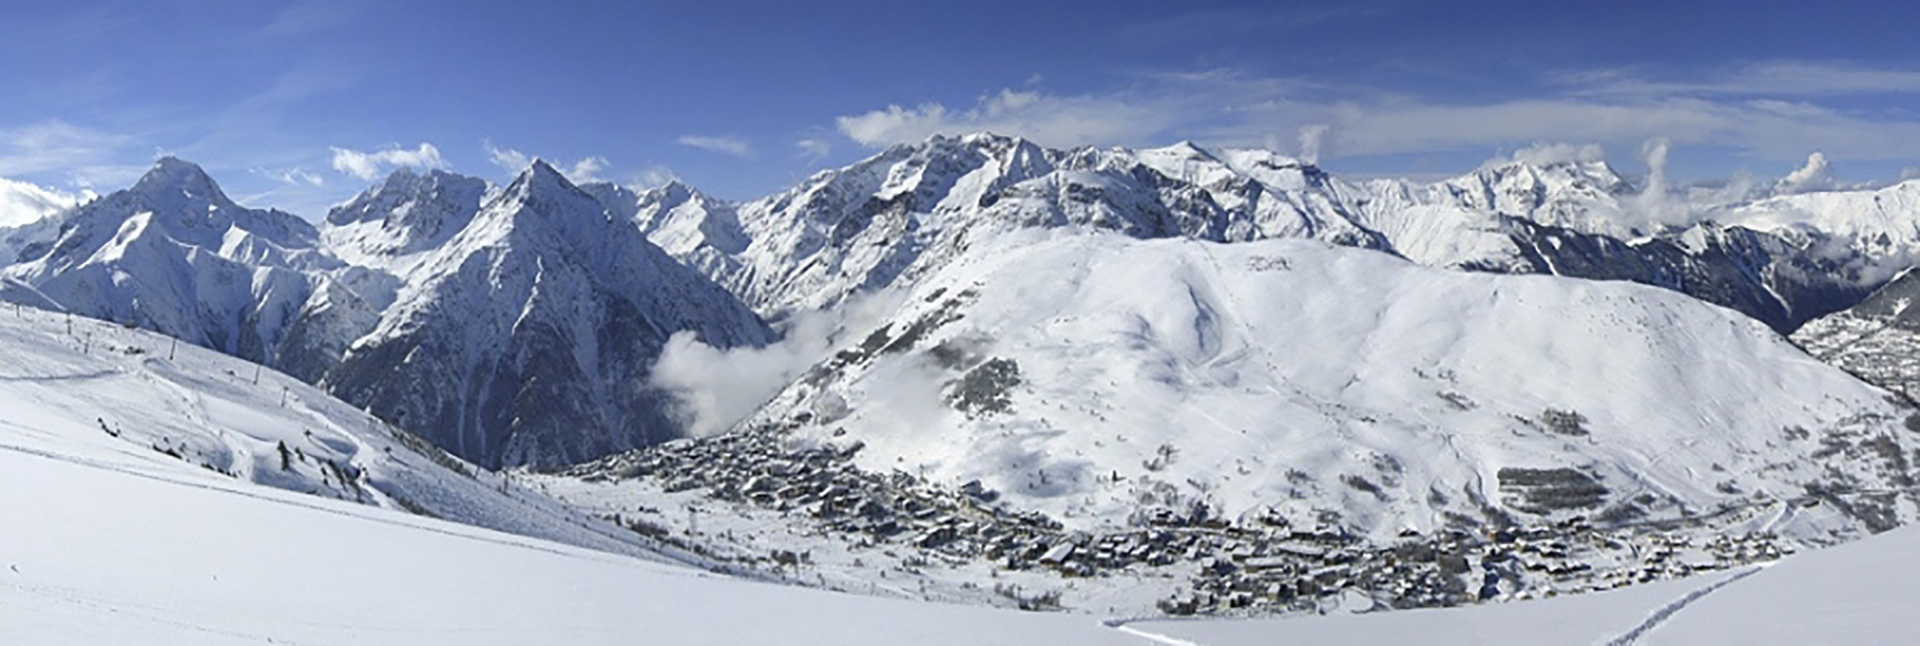 Mountain View of Les Deux Alpes